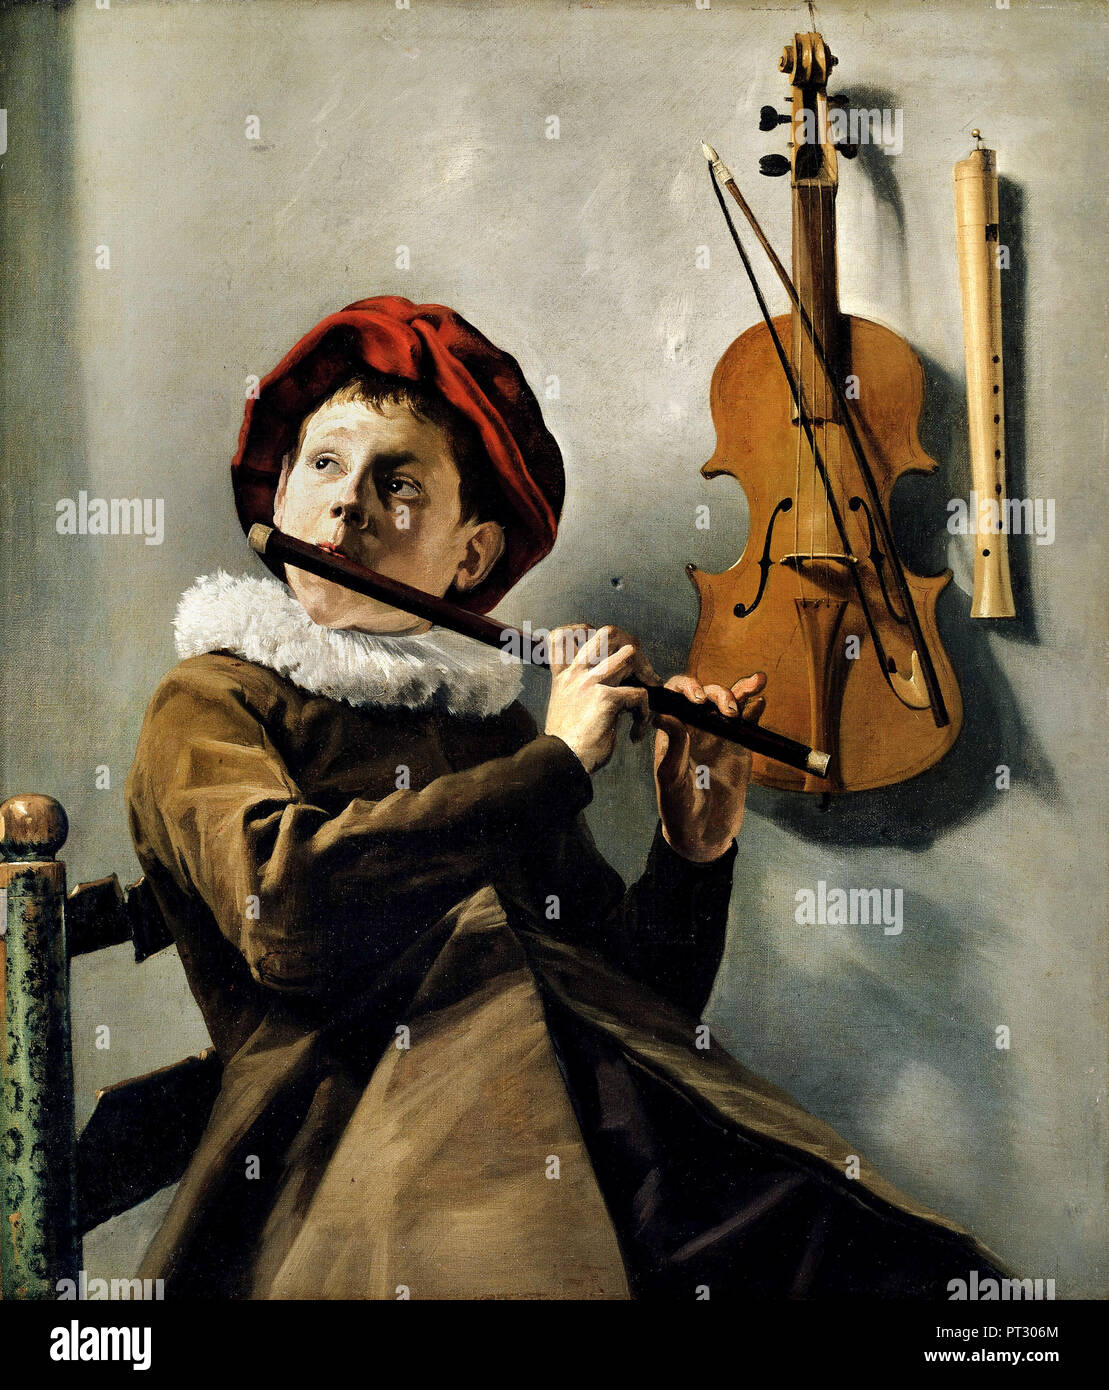 Judith Leyster, Junge Flötenspieler/Junge spielt die Flöte, ca. 1630 Öl auf Leinwand, Nationalmuseum, Stockholm, Schweden. Stockfoto